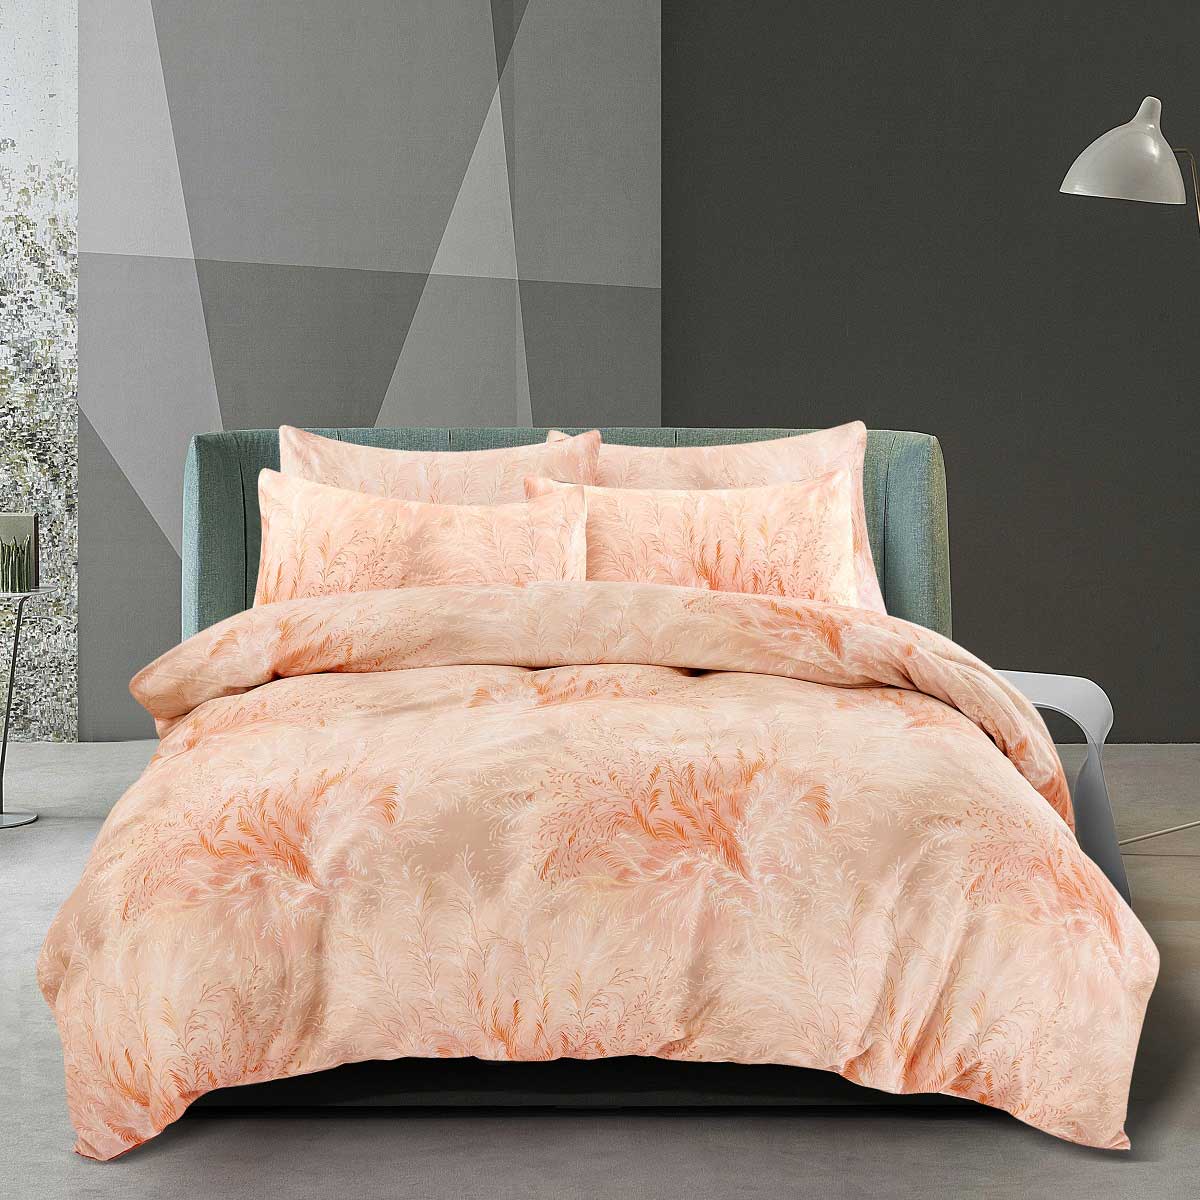 Комплект постельного белья 1,5-спальный Pappel feather saival classic рефлекс комплект повод шлейка xs оранжевый